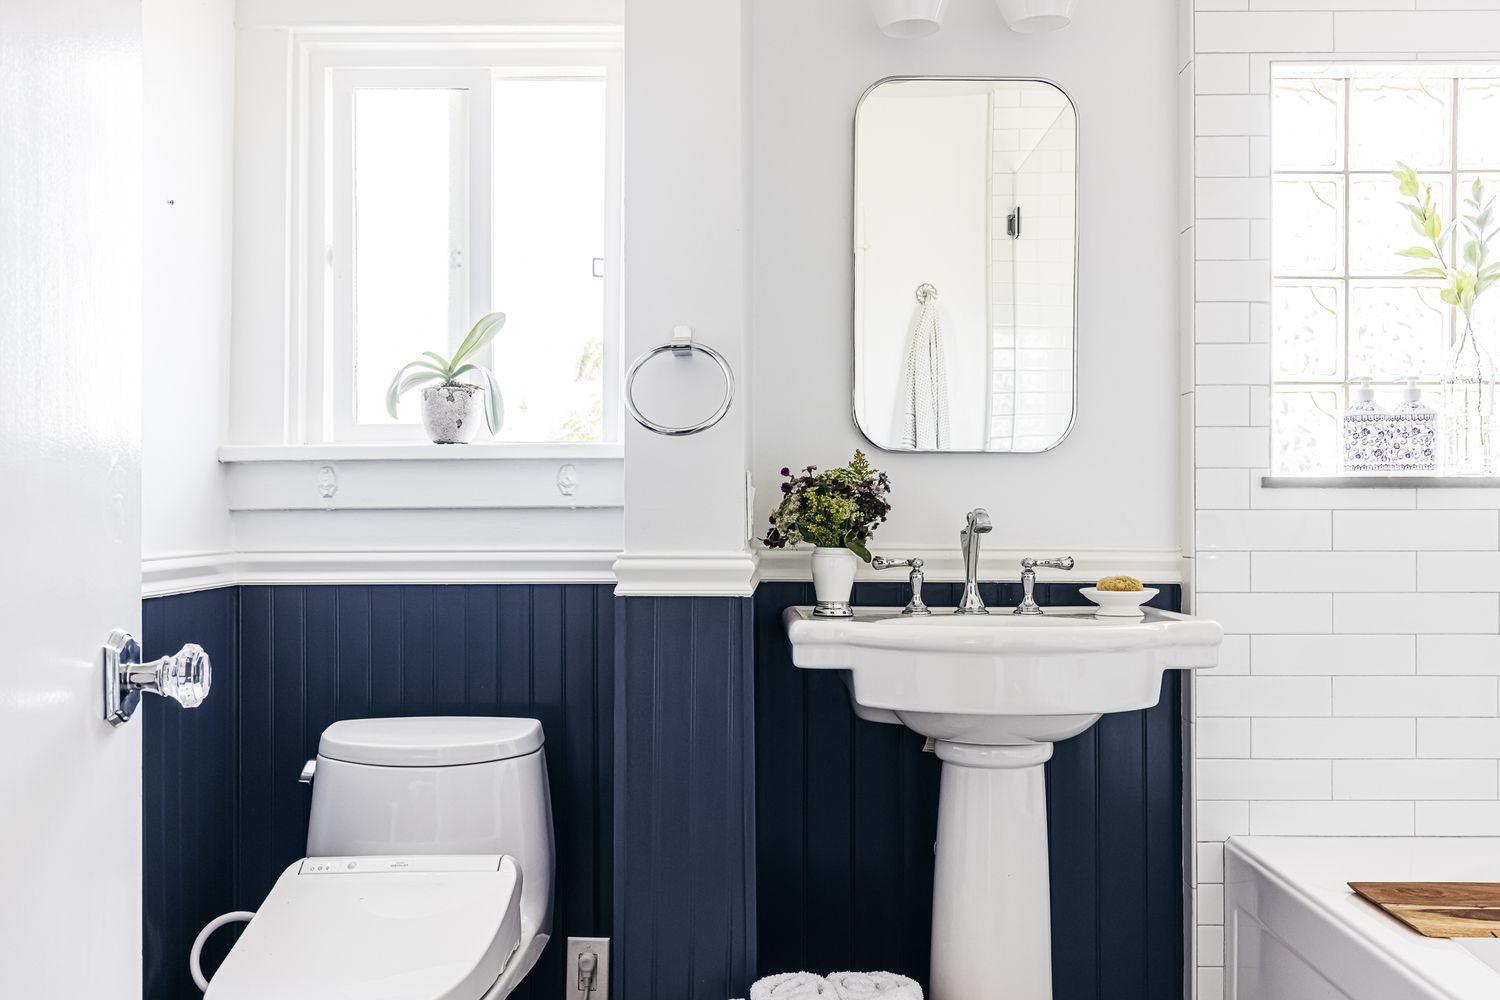 Banheiro pequeno com paredes brancas divididas com tratamento de beadboard azul-marinho